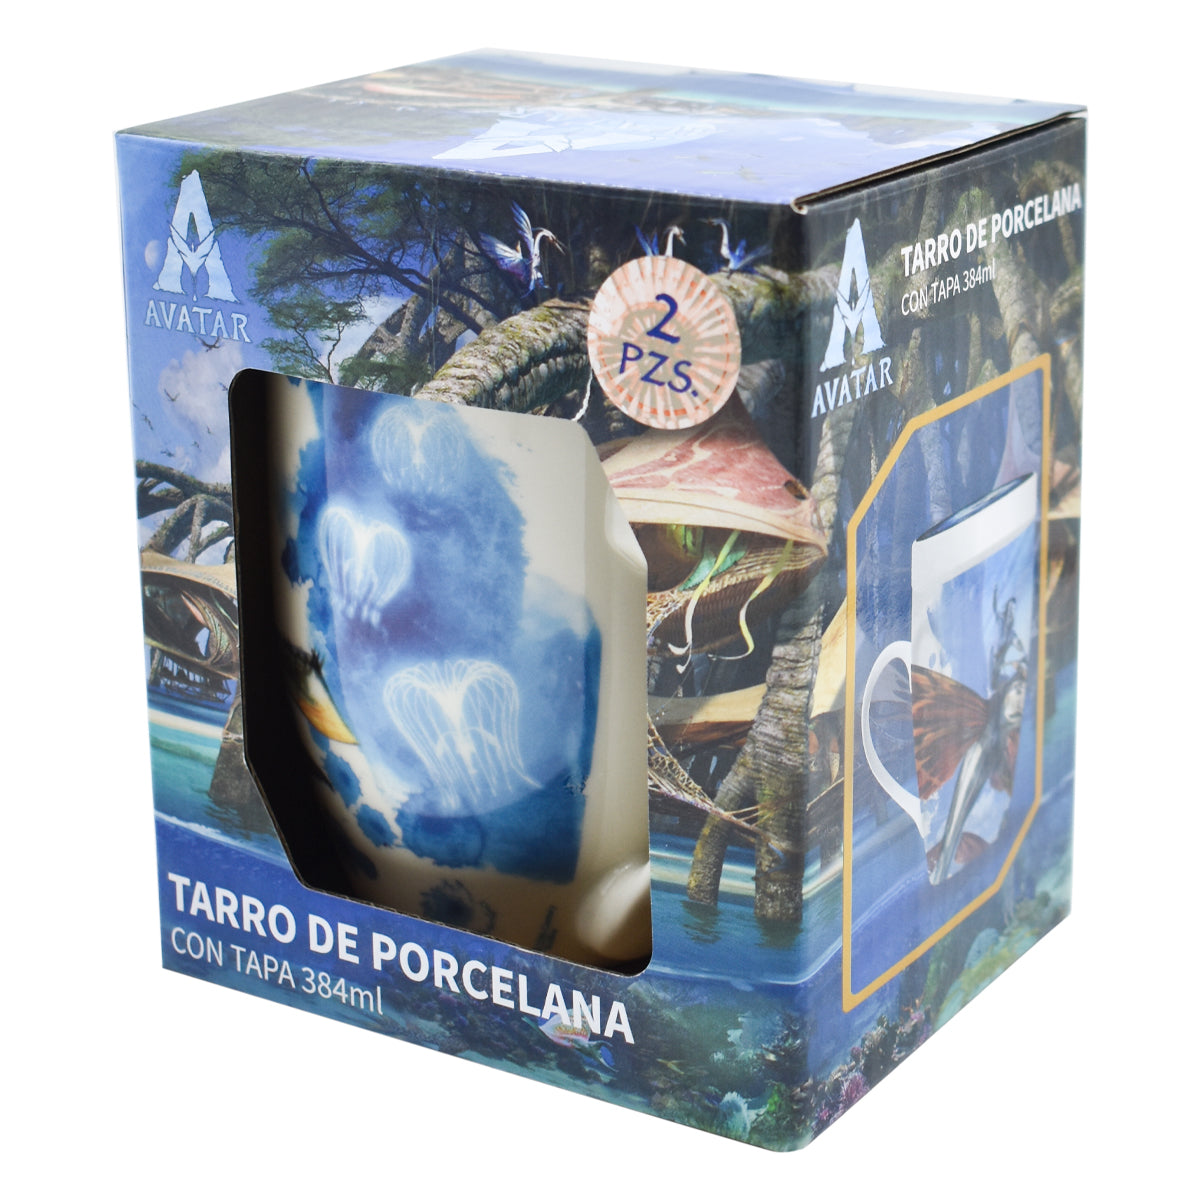 Tarro para Café de Porcelana con Tapa, Avatar: El Sentido del Agua